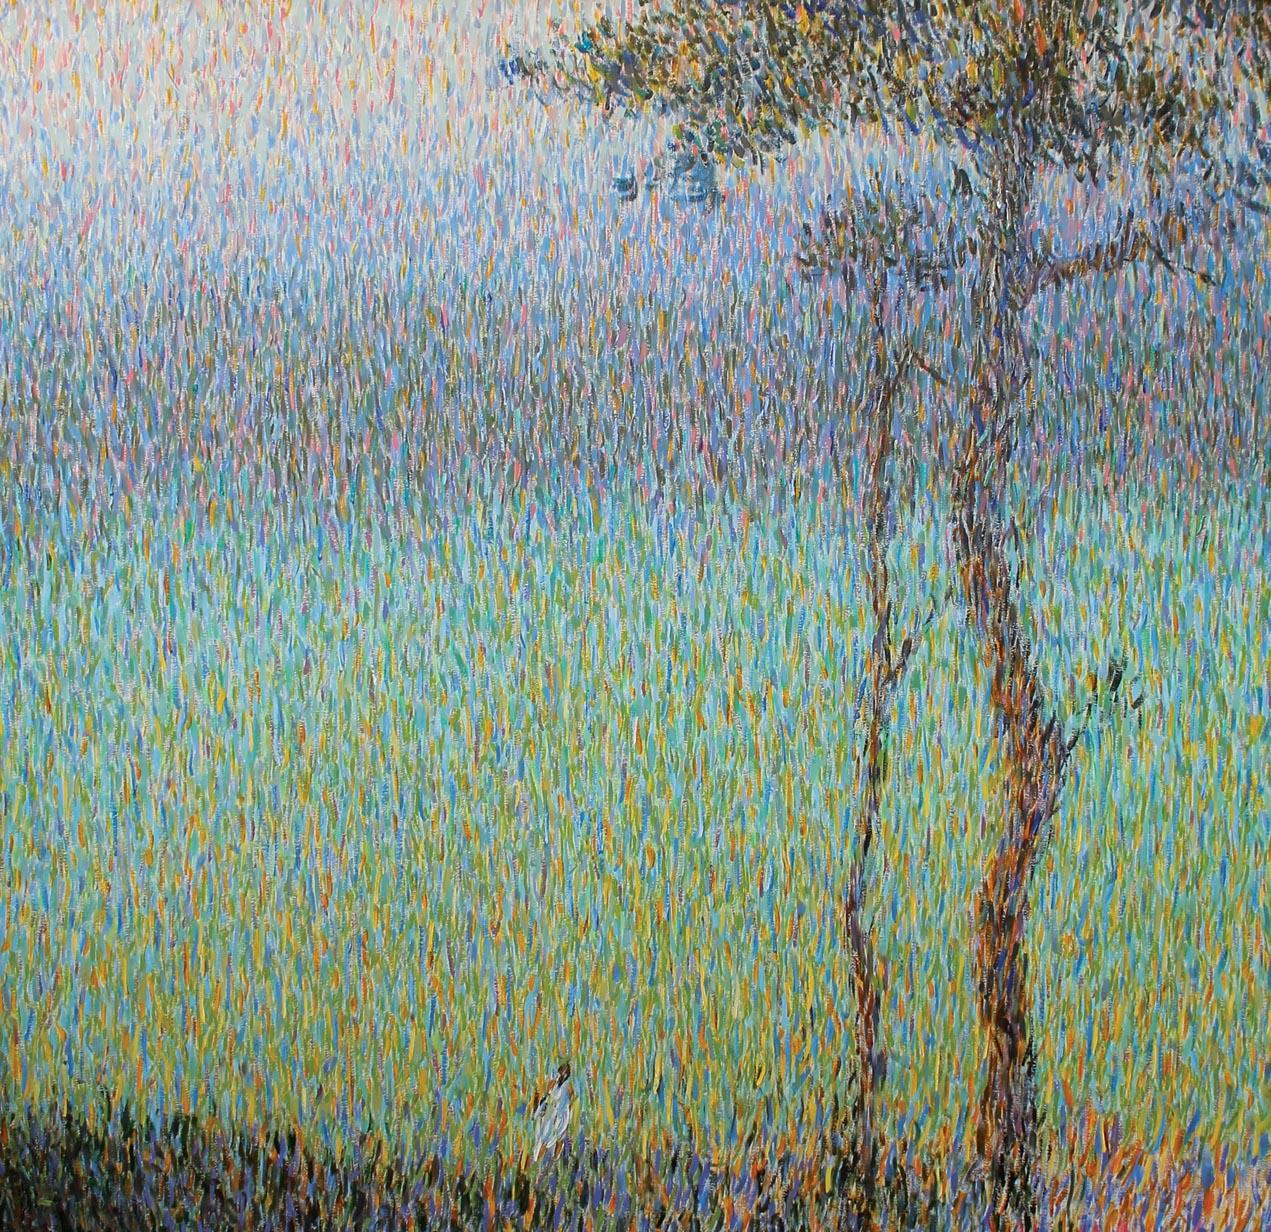 Roman Konstantinov Landscape Painting - Morning Dream